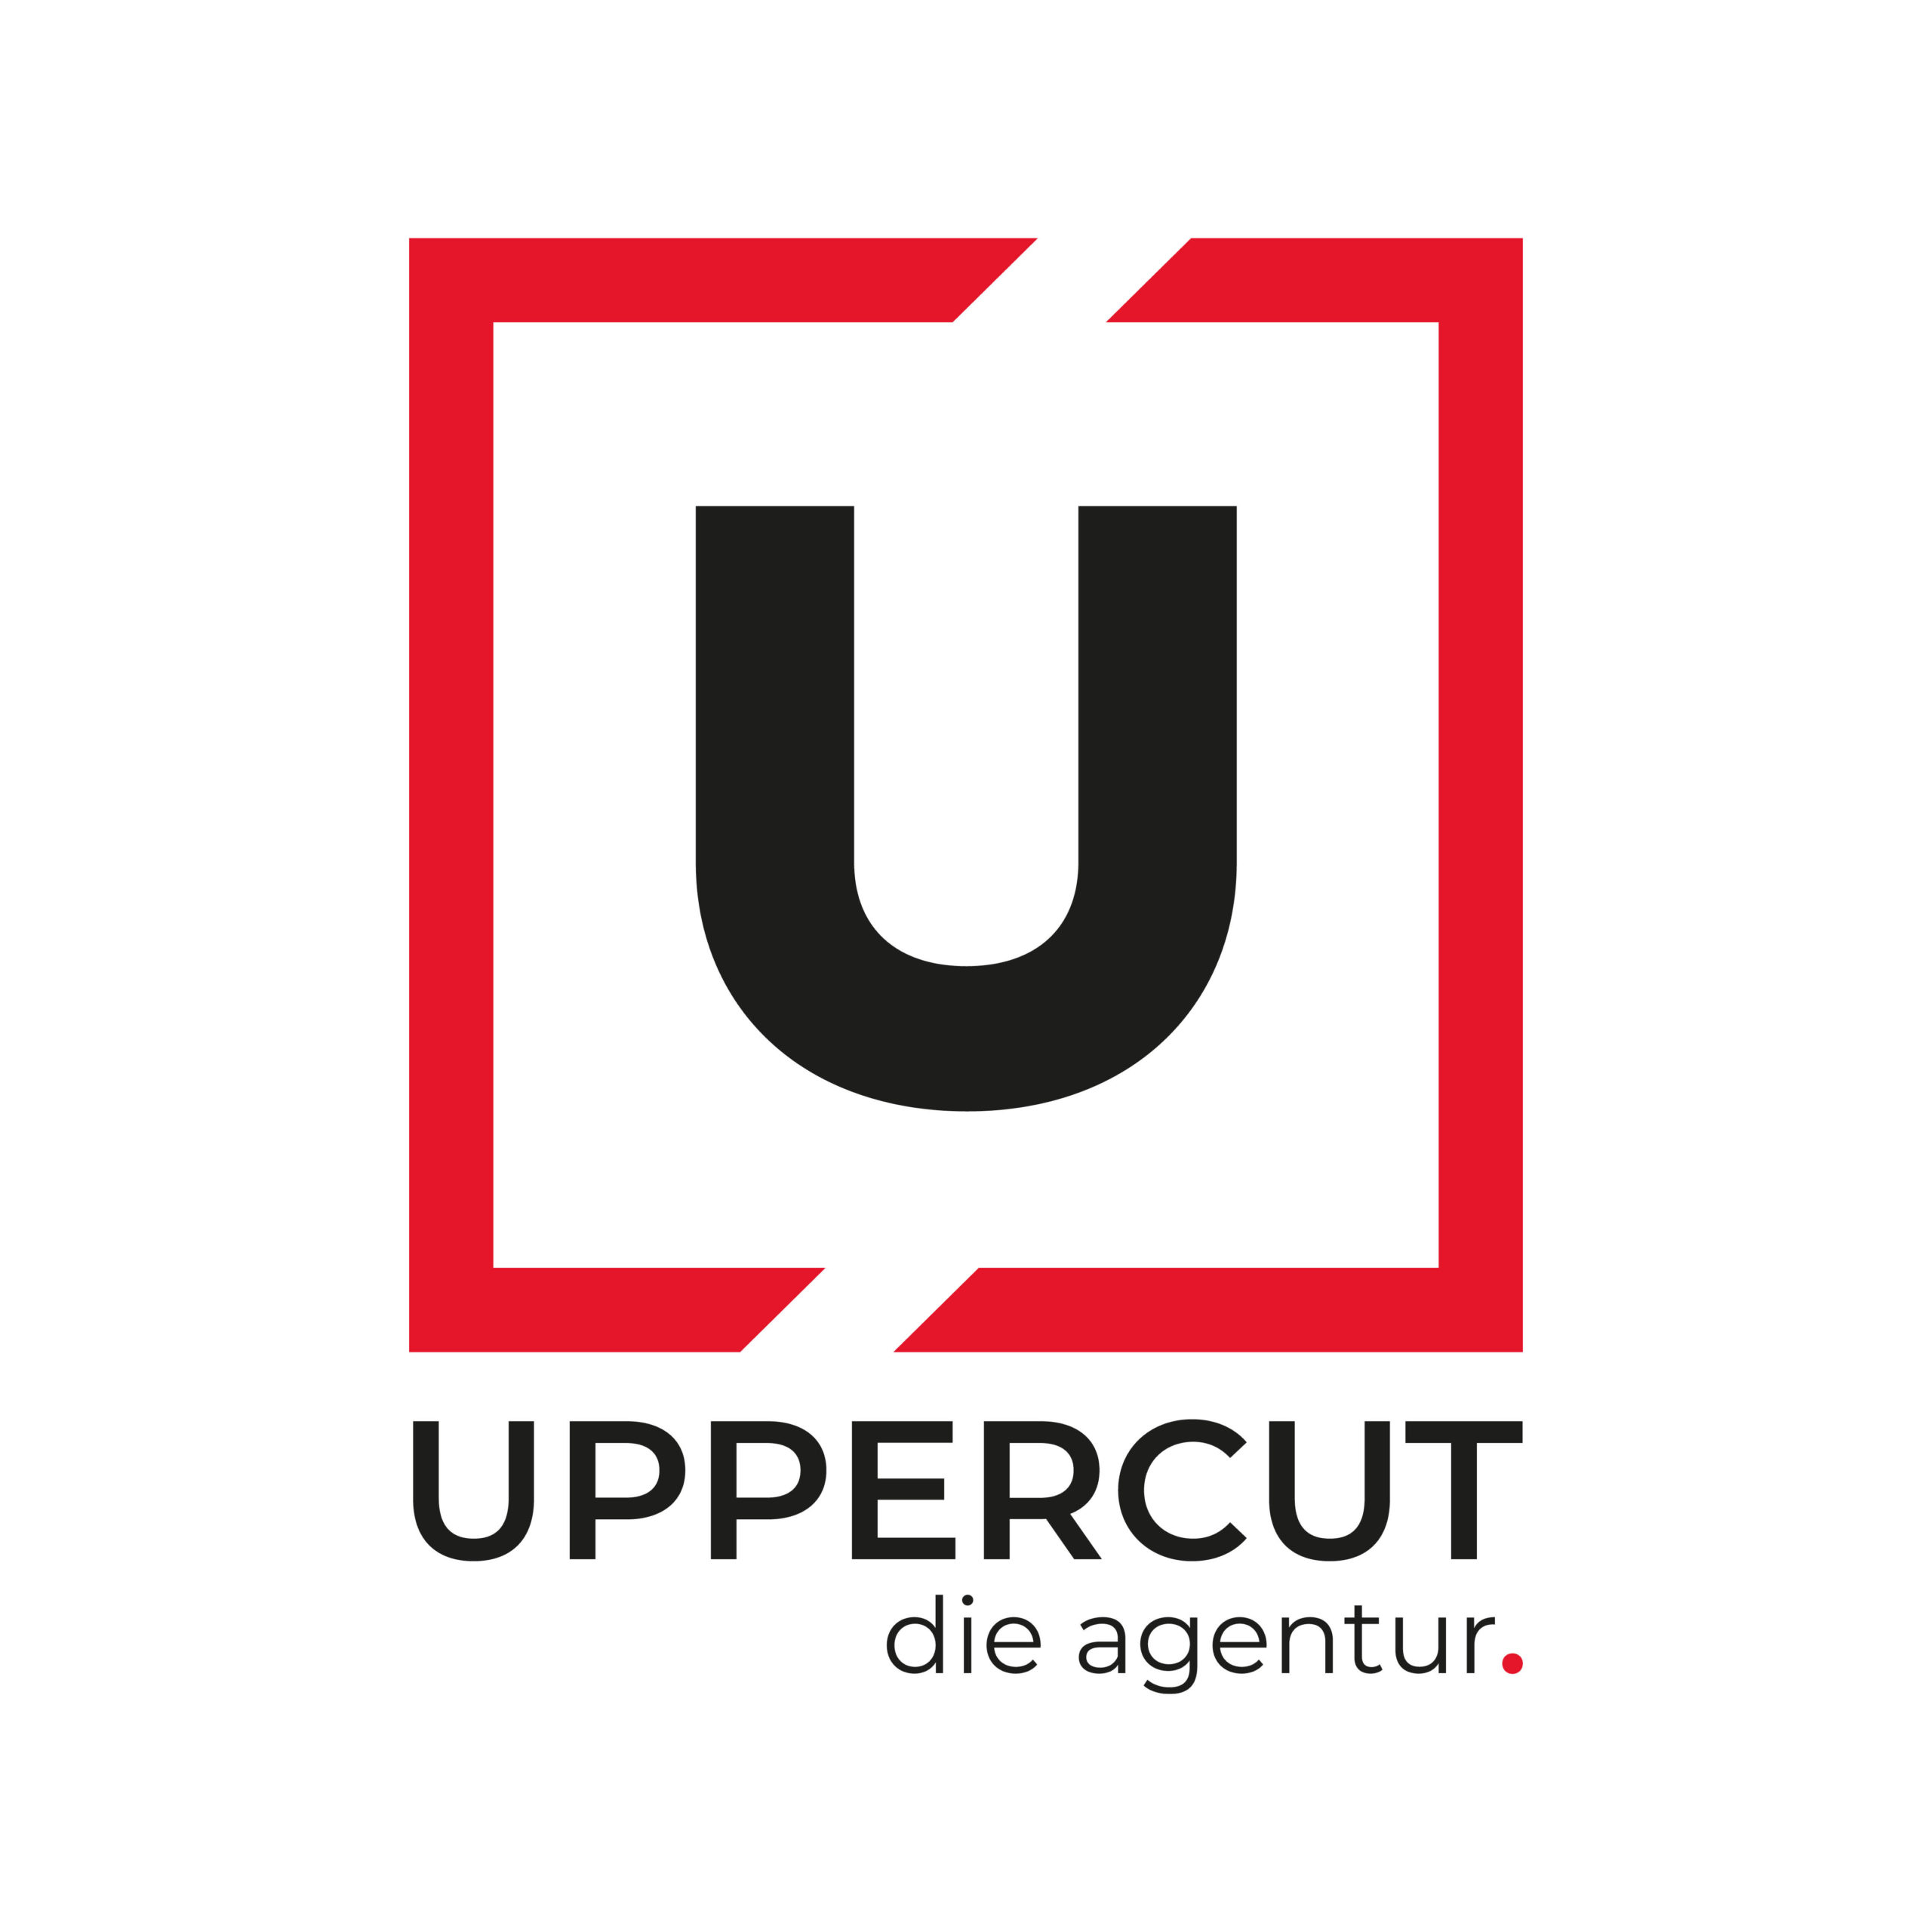 Uppercut - die agentur